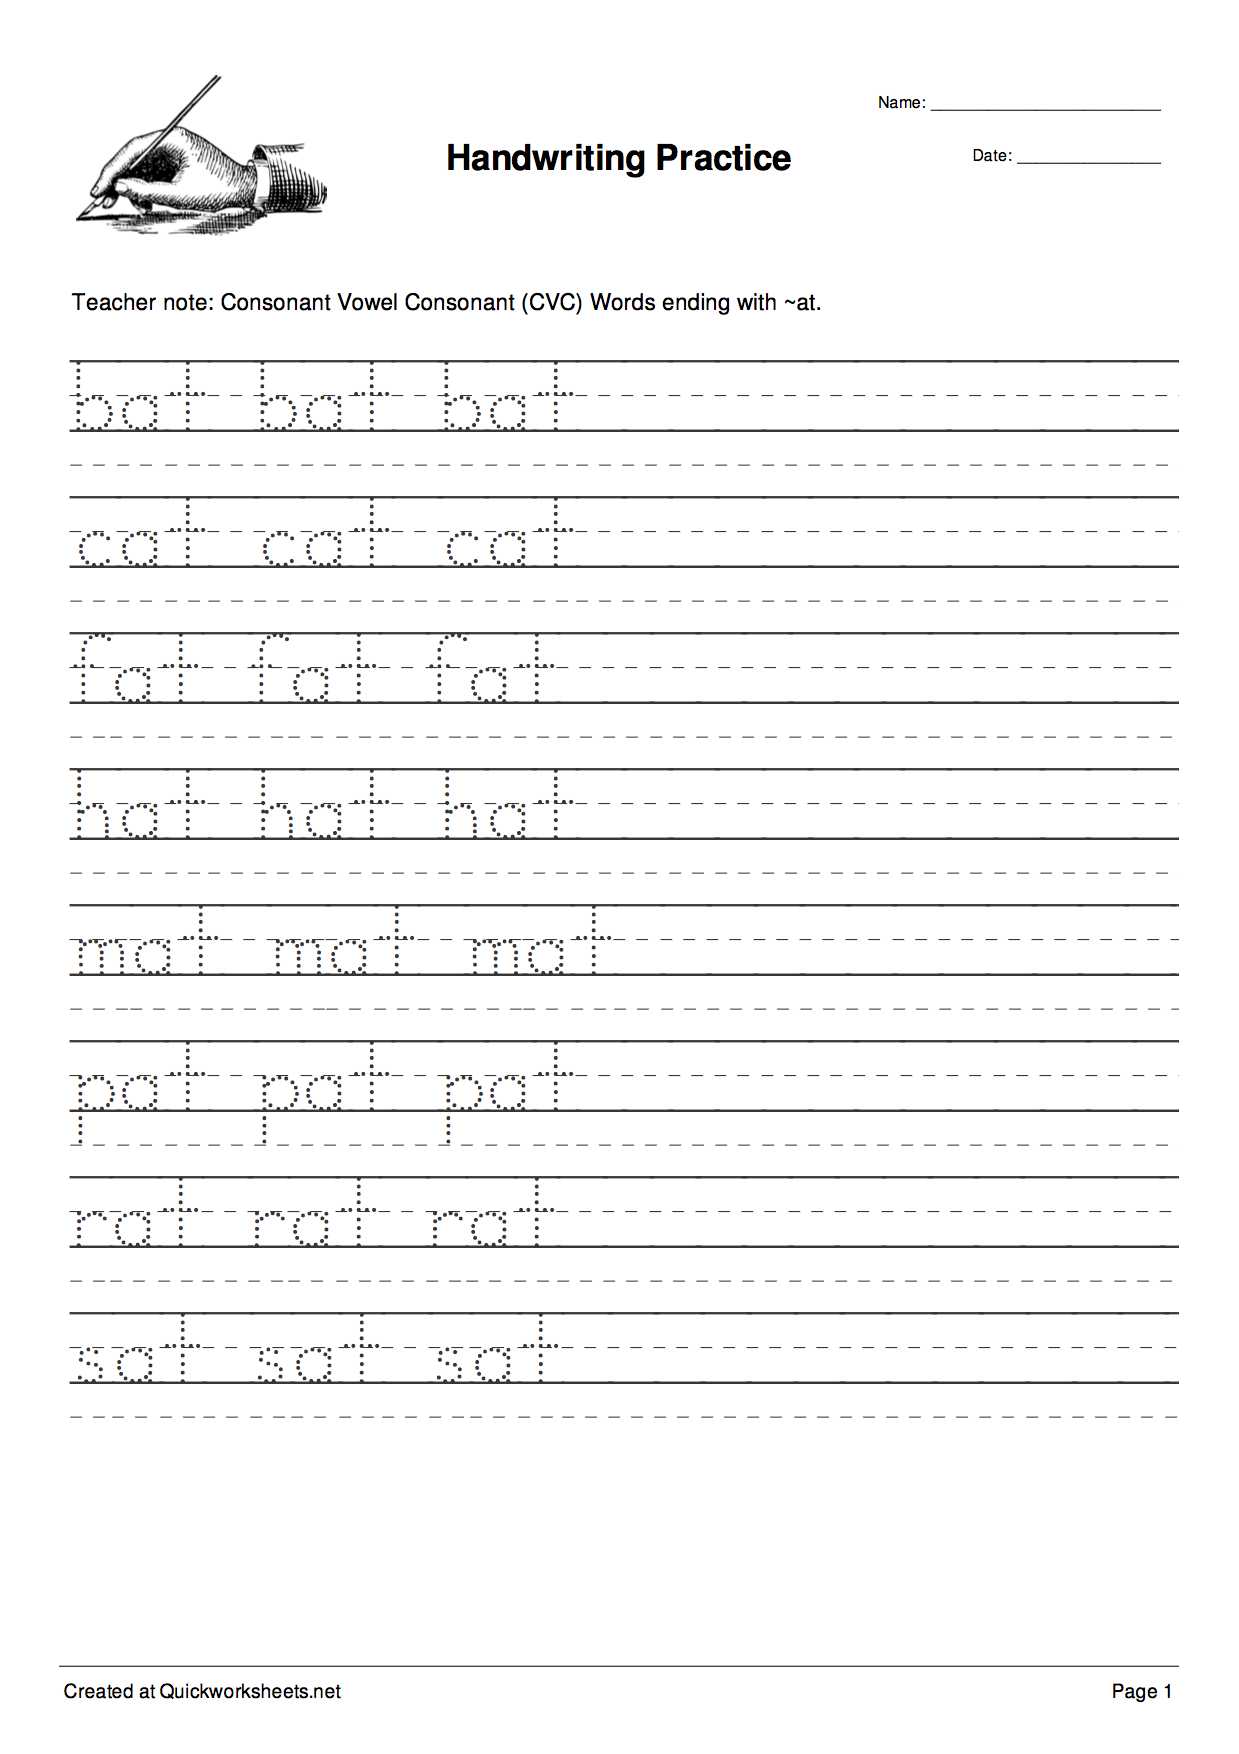 Preschool Writing Worksheets Free Printable or Tracer Worksheet Maker Kidz Activities